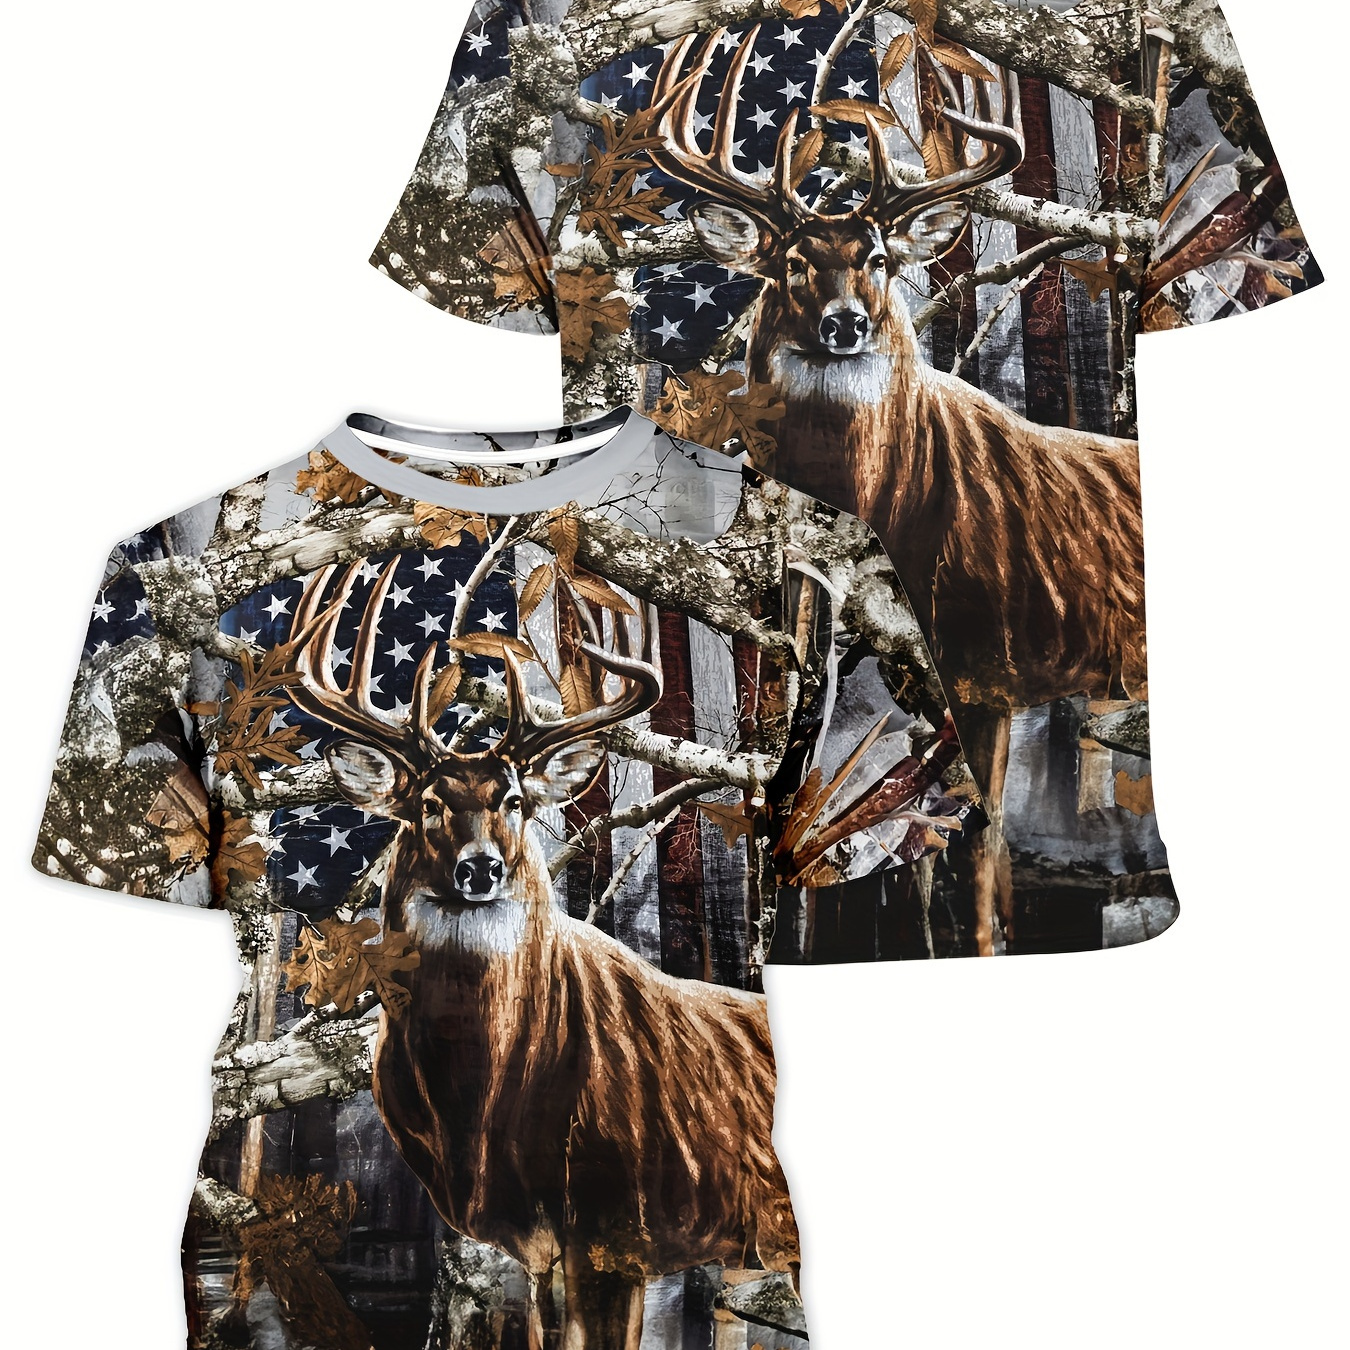 

Men's Deer Print T-shirt, Casual Short Sleeve Crew Neck Tee, Men's Clothing For Outdoor